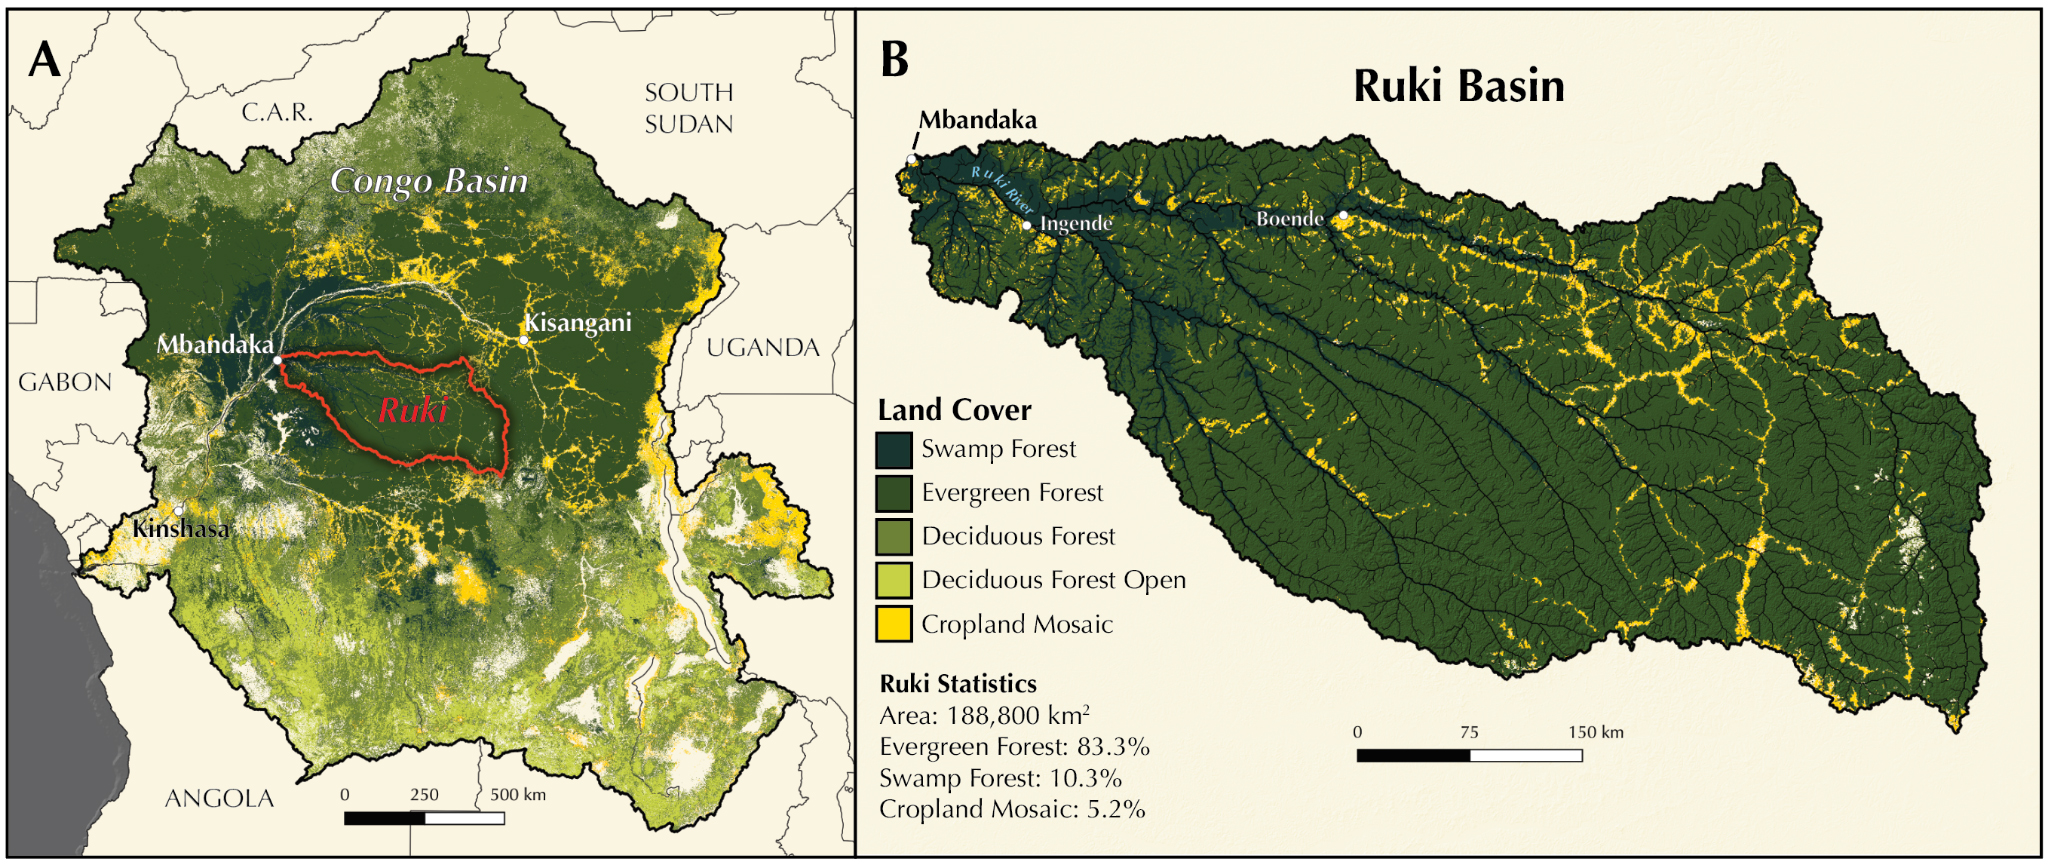 Vergr?sserte Ansicht: Karte, welche das Ruki-Becken in der Demokratischen Republik Kongo zeigt (links) und Karte, die die Ruki Basin zeigt (rechts)